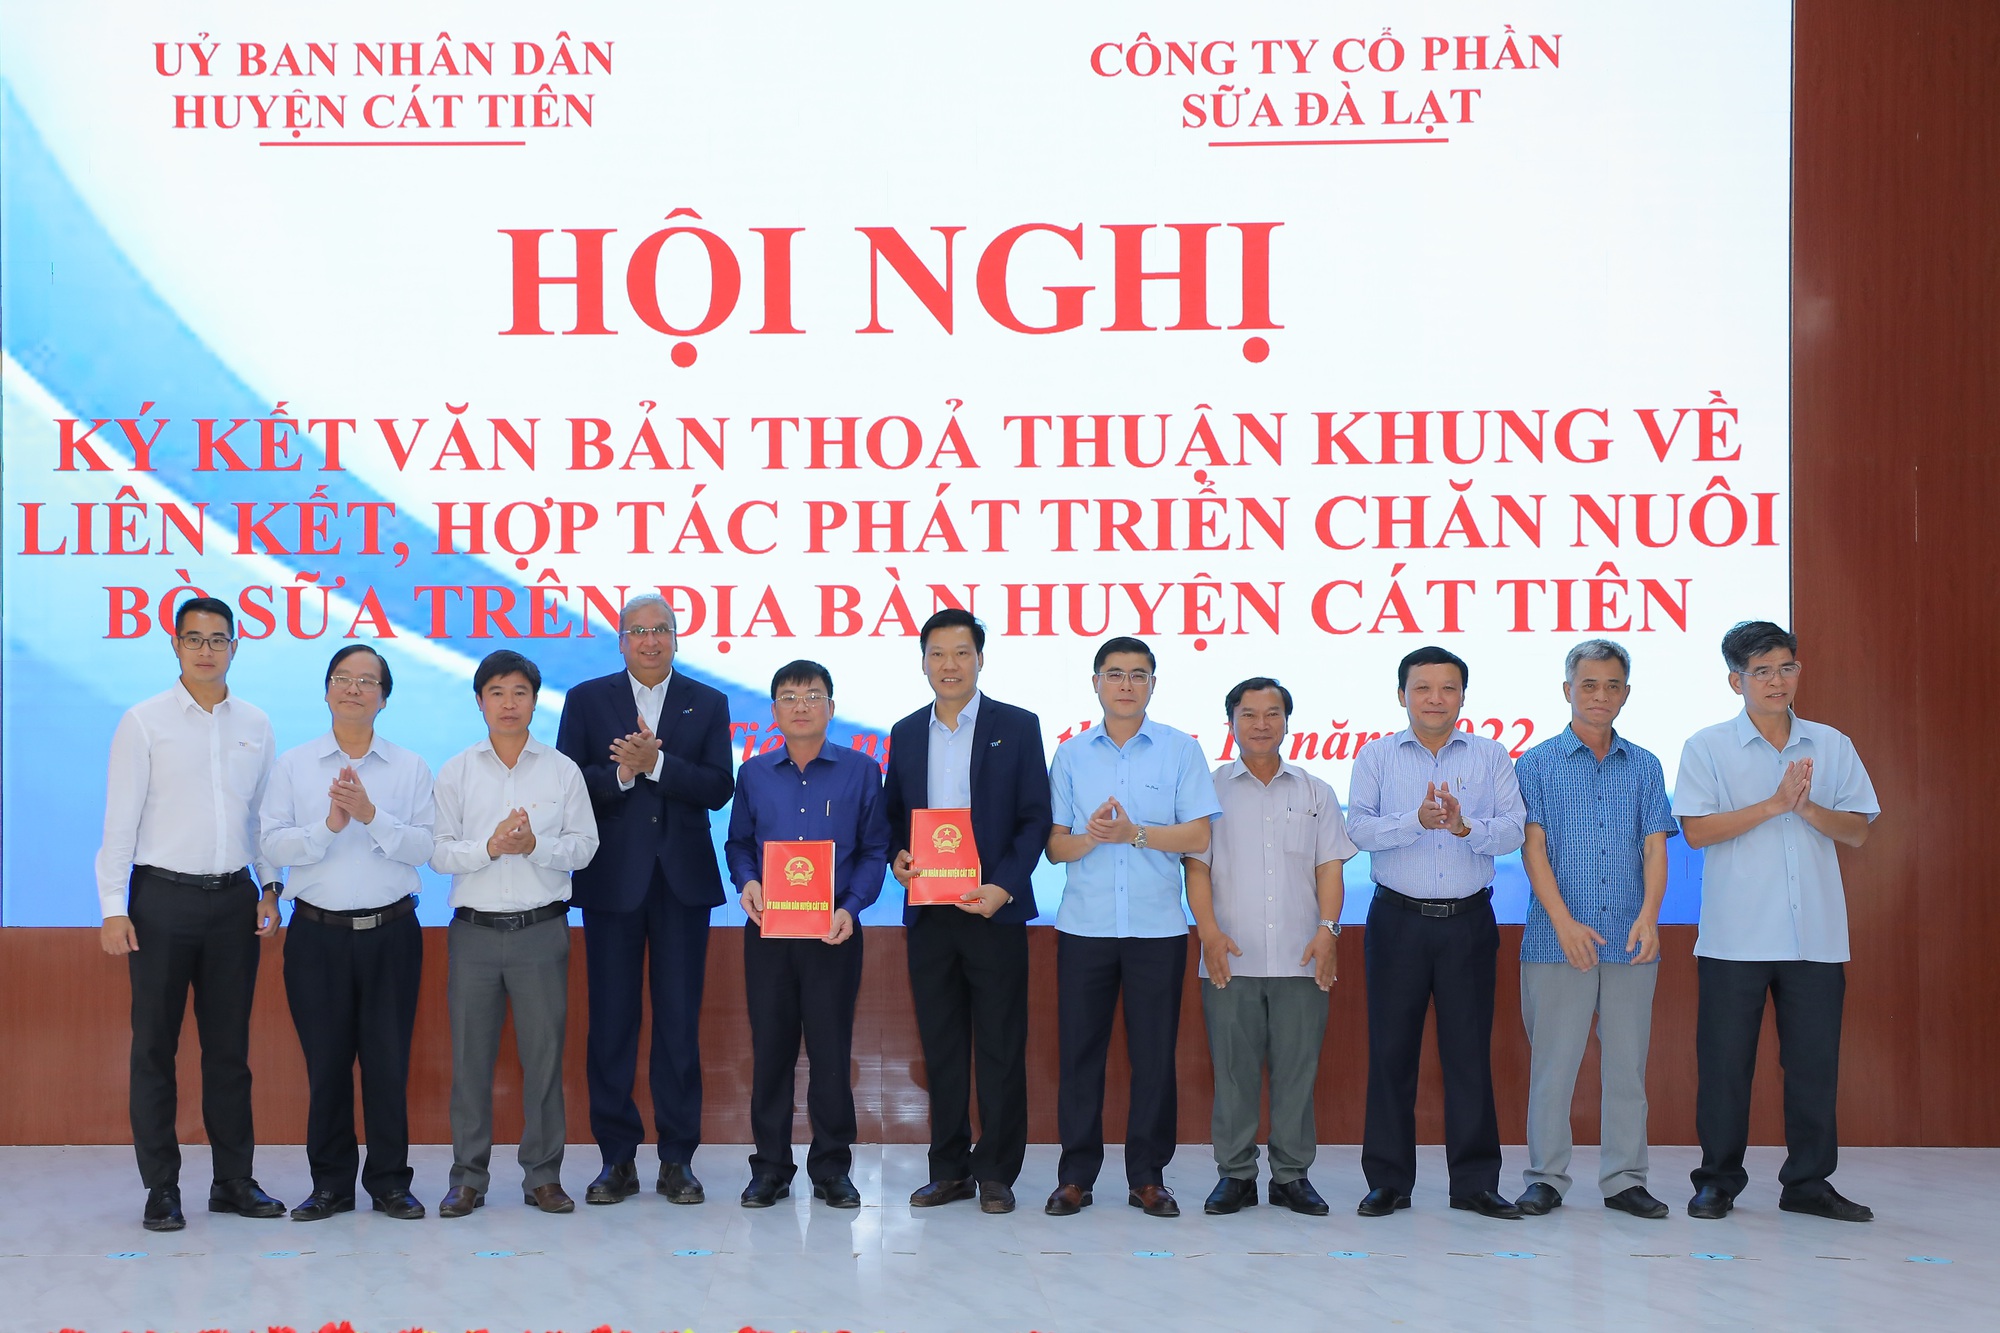 Dalatmilk ký kết hợp tác phát triển chăn nuôi bò sữa tại huyện Cát Tiên (Lâm Đồng) - Ảnh 2.